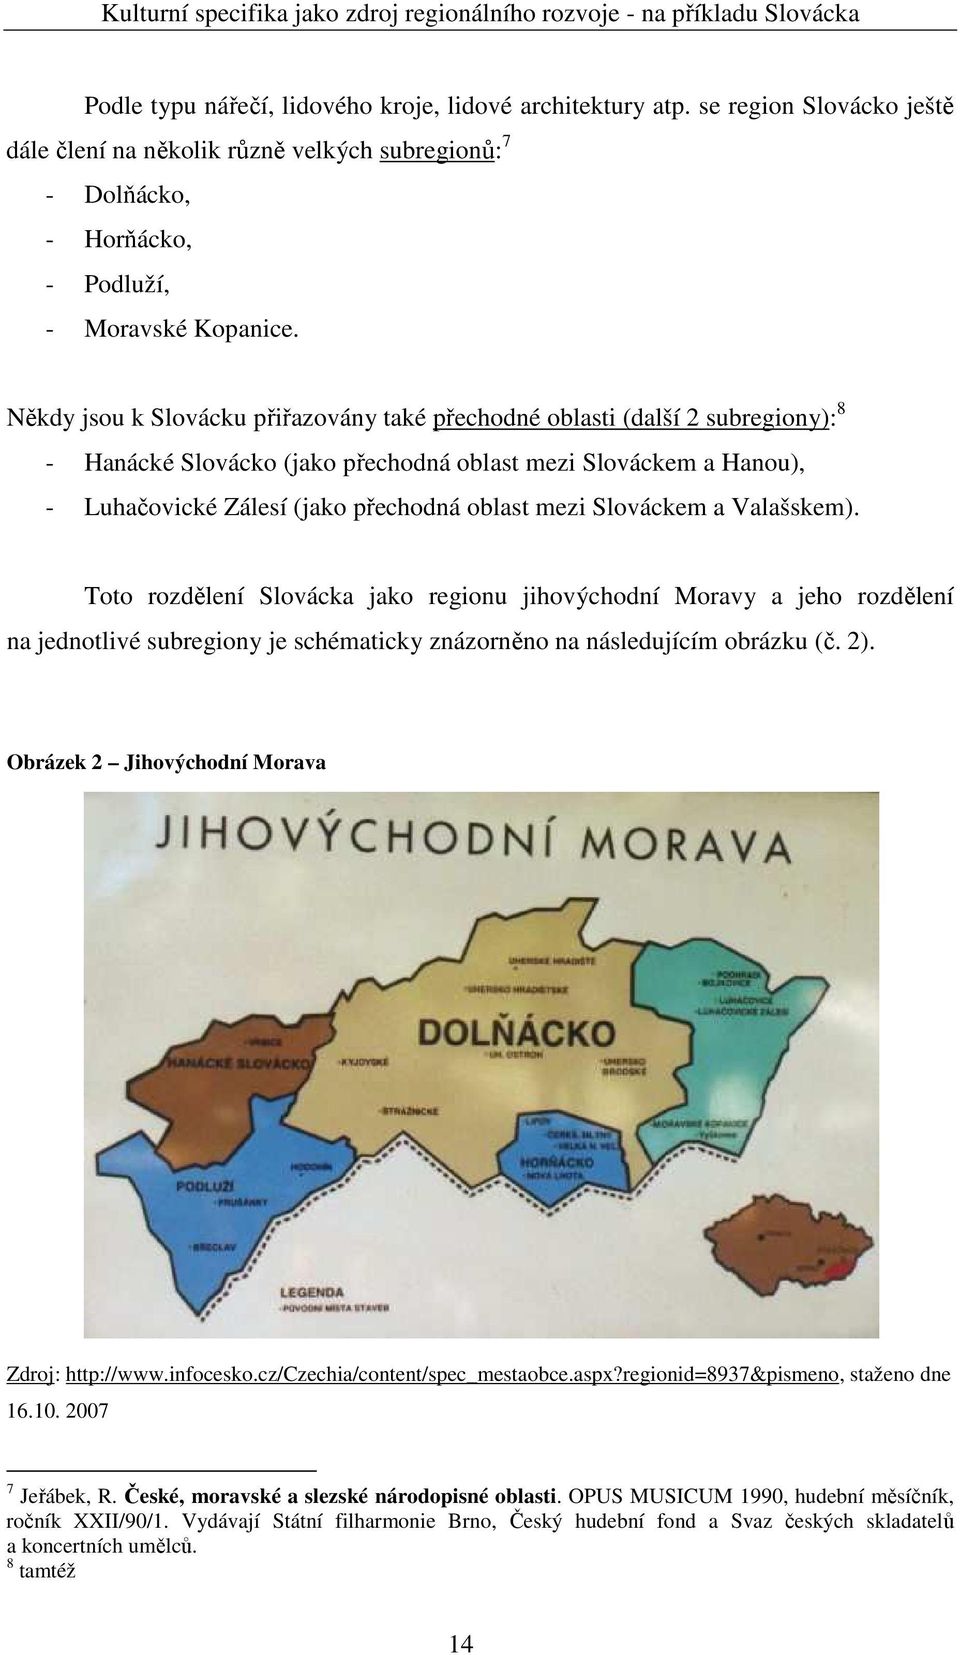 Slováckem a Valašskem). Toto rozdělení Slovácka jako regionu jihovýchodní Moravy a jeho rozdělení na jednotlivé subregiony je schématicky znázorněno na následujícím obrázku (č. 2).